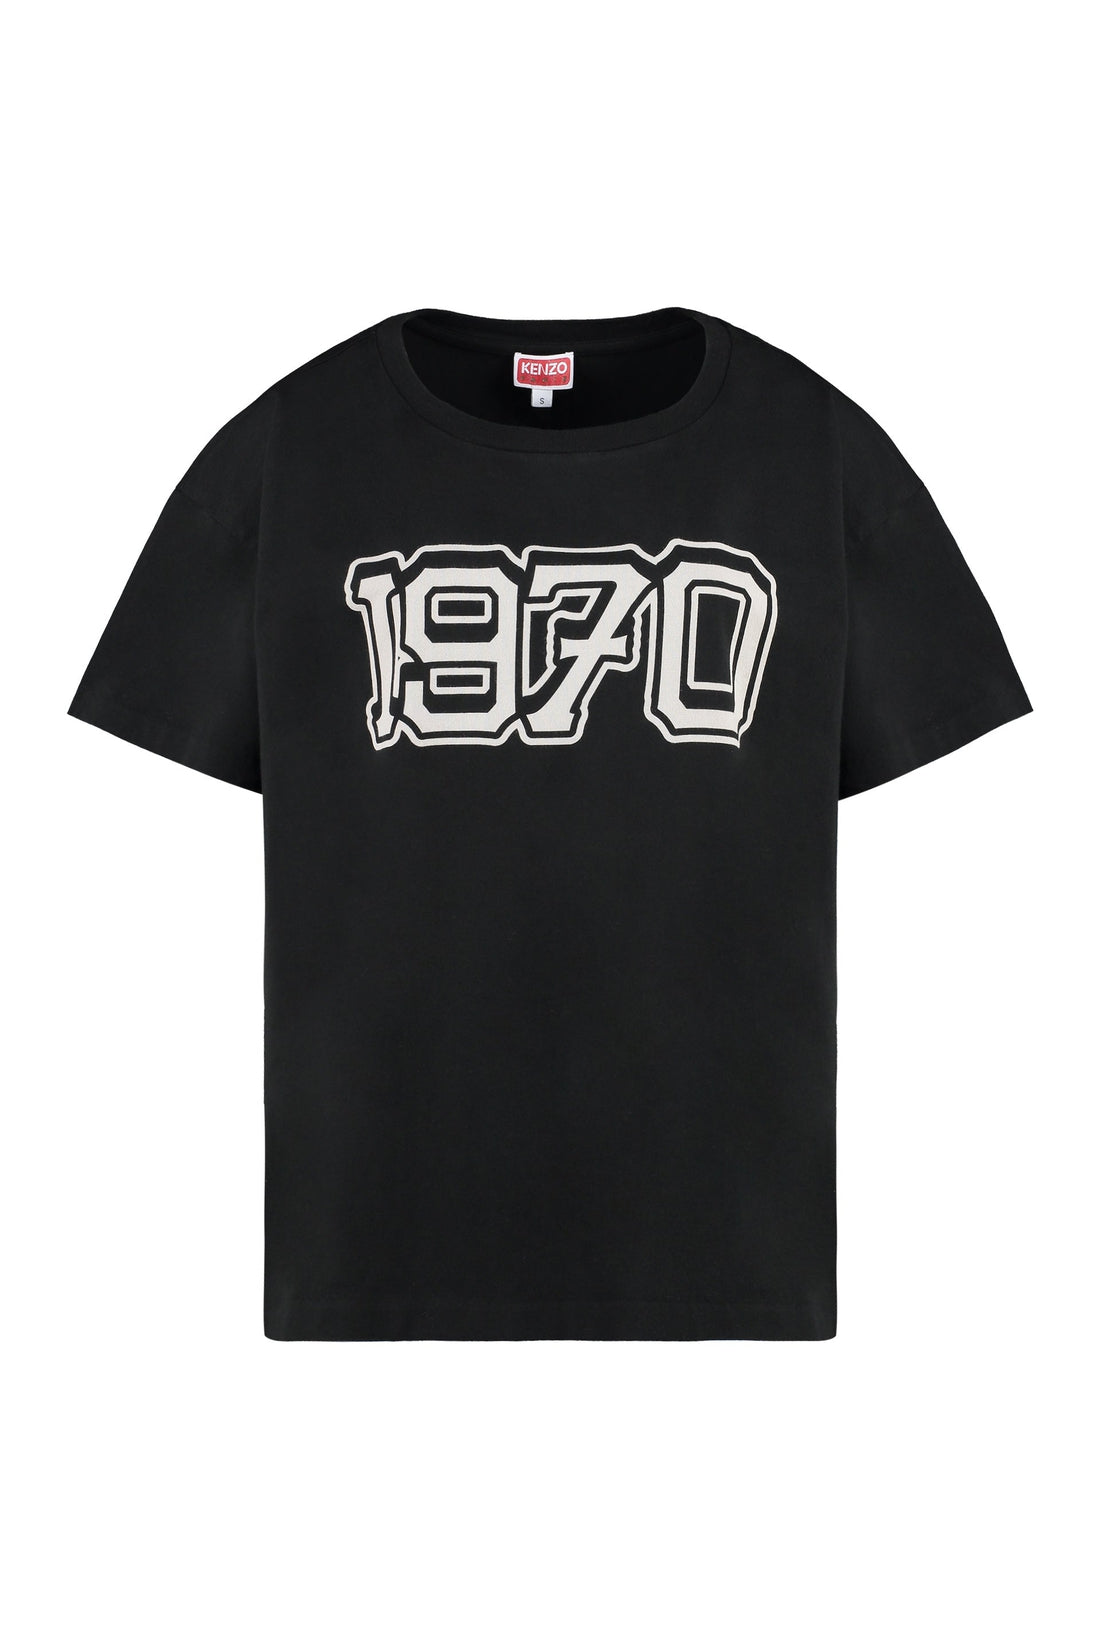 Kenzo-OUTLET-SALE-Cotton crew-neck T-shirt-ARCHIVIST